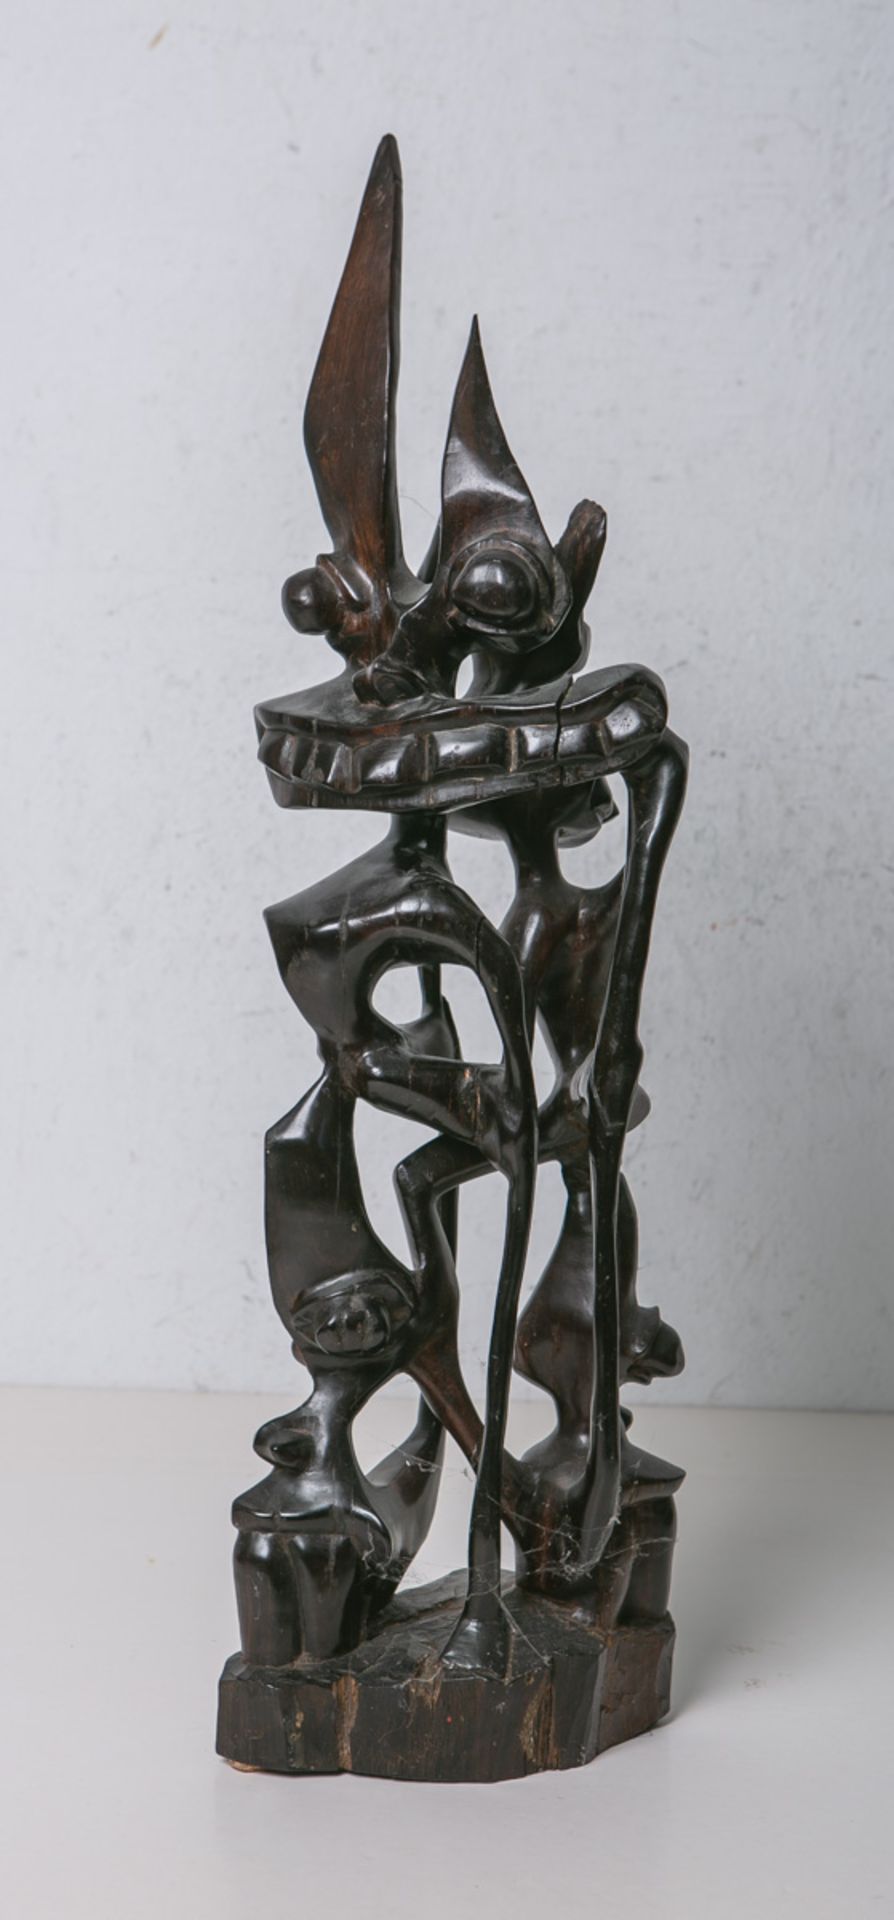 Zeremonialfigur (Afrika, Alter unbekannt)